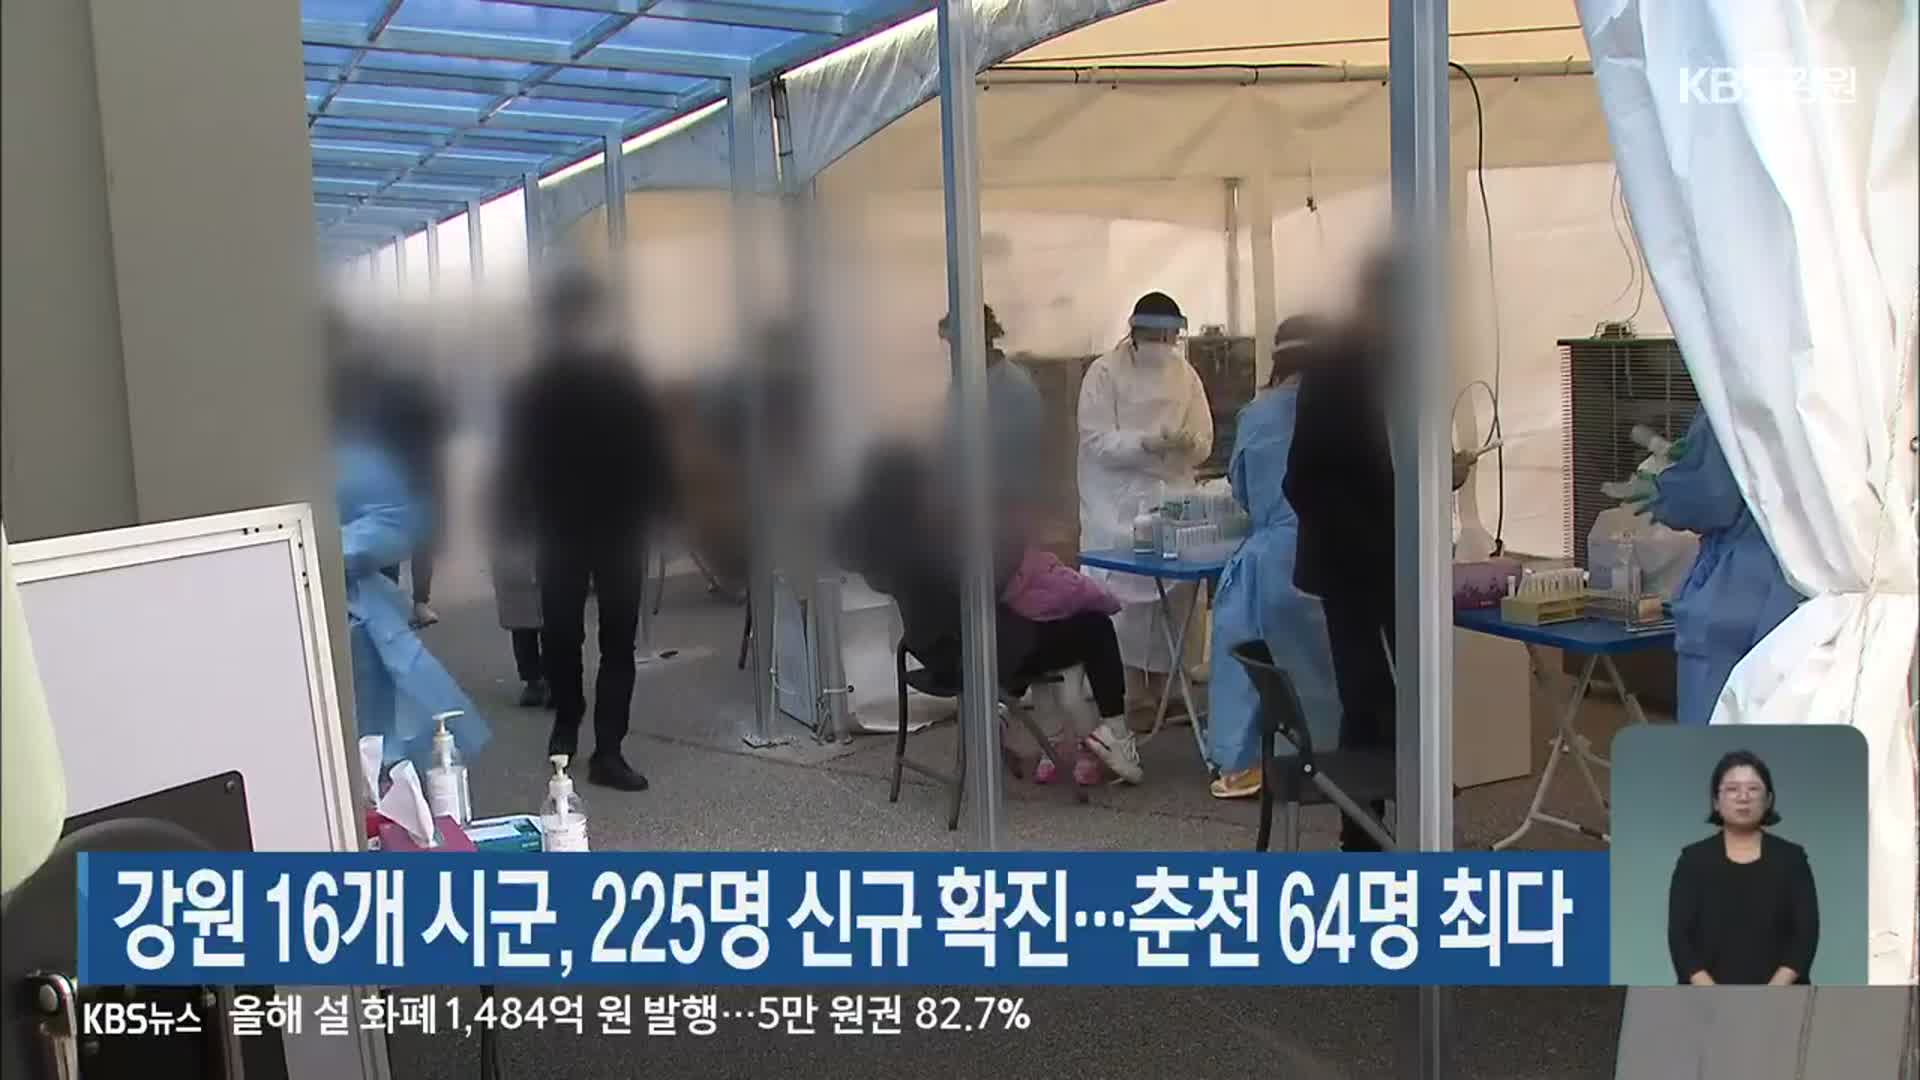 강원 16개 시군, 225명 신규 확진…춘천 64명 최다